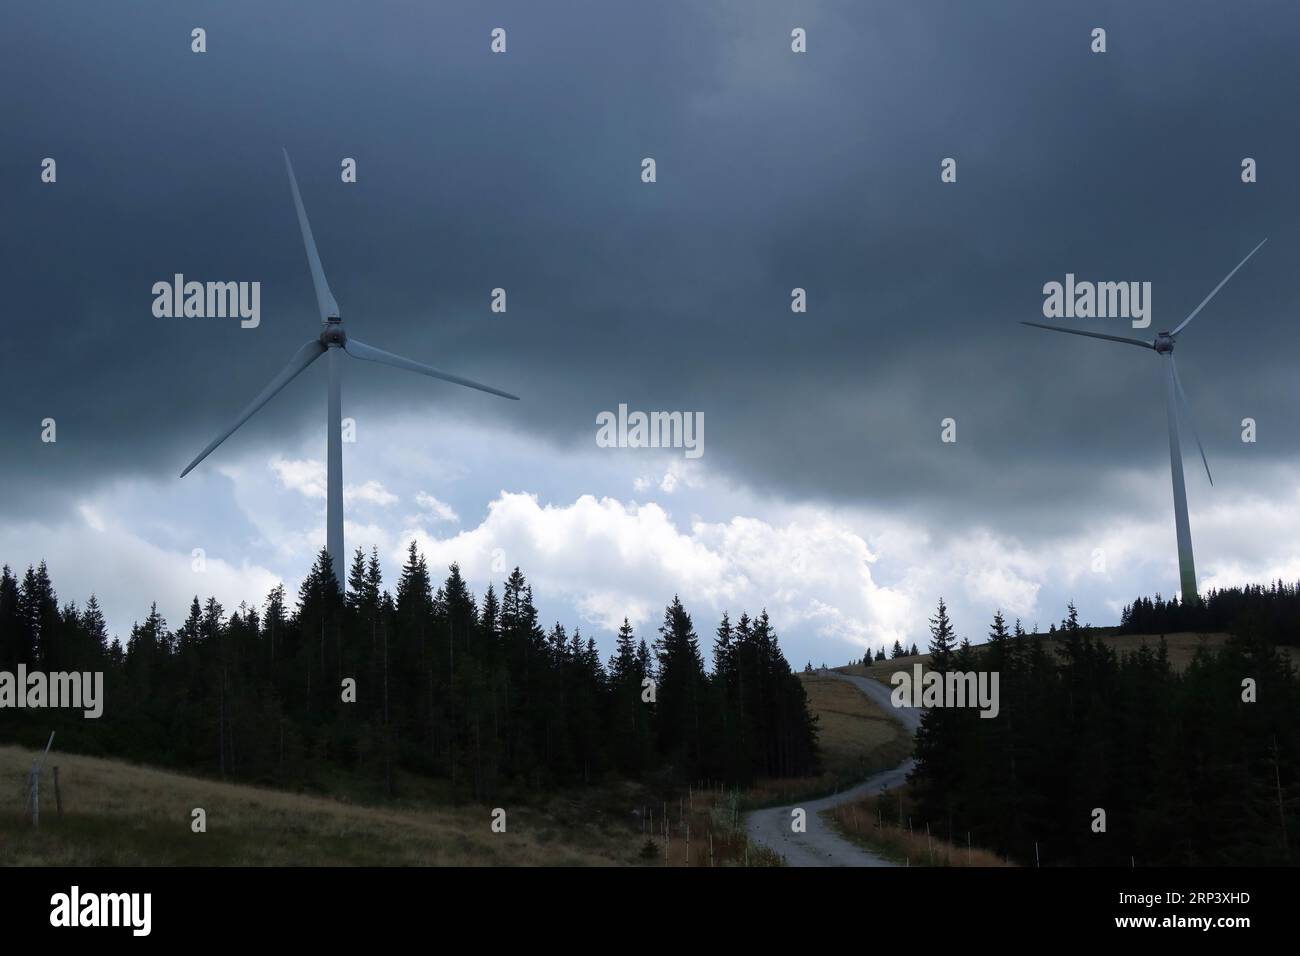 Zwei Windturbinen mit dunklen Wolken im Hintergrund und Kiefern im Vordergrund Stockfoto